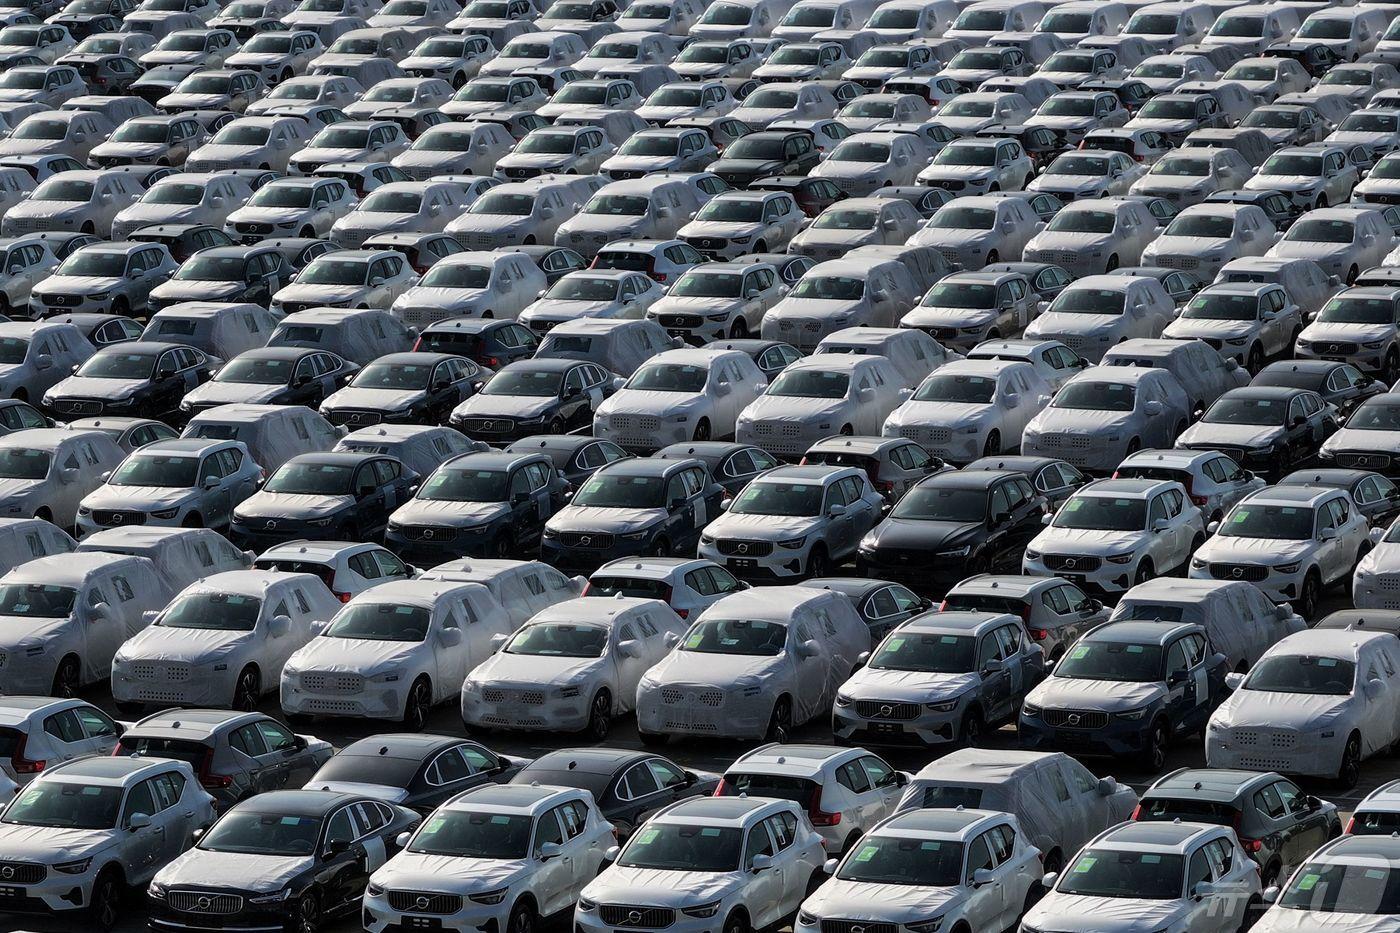 중국 장쑤성 난징항에서 선적을 기다리는 볼보 자동차들이 열지어 서있다. 스웨덴 브랜드인 볼보 자동차는 중국 길리 자동차의 자회사로 주로 중국 청두에서 생산된다. ⓒ AFP=뉴스1 ⓒ News1 윤석민 대기자